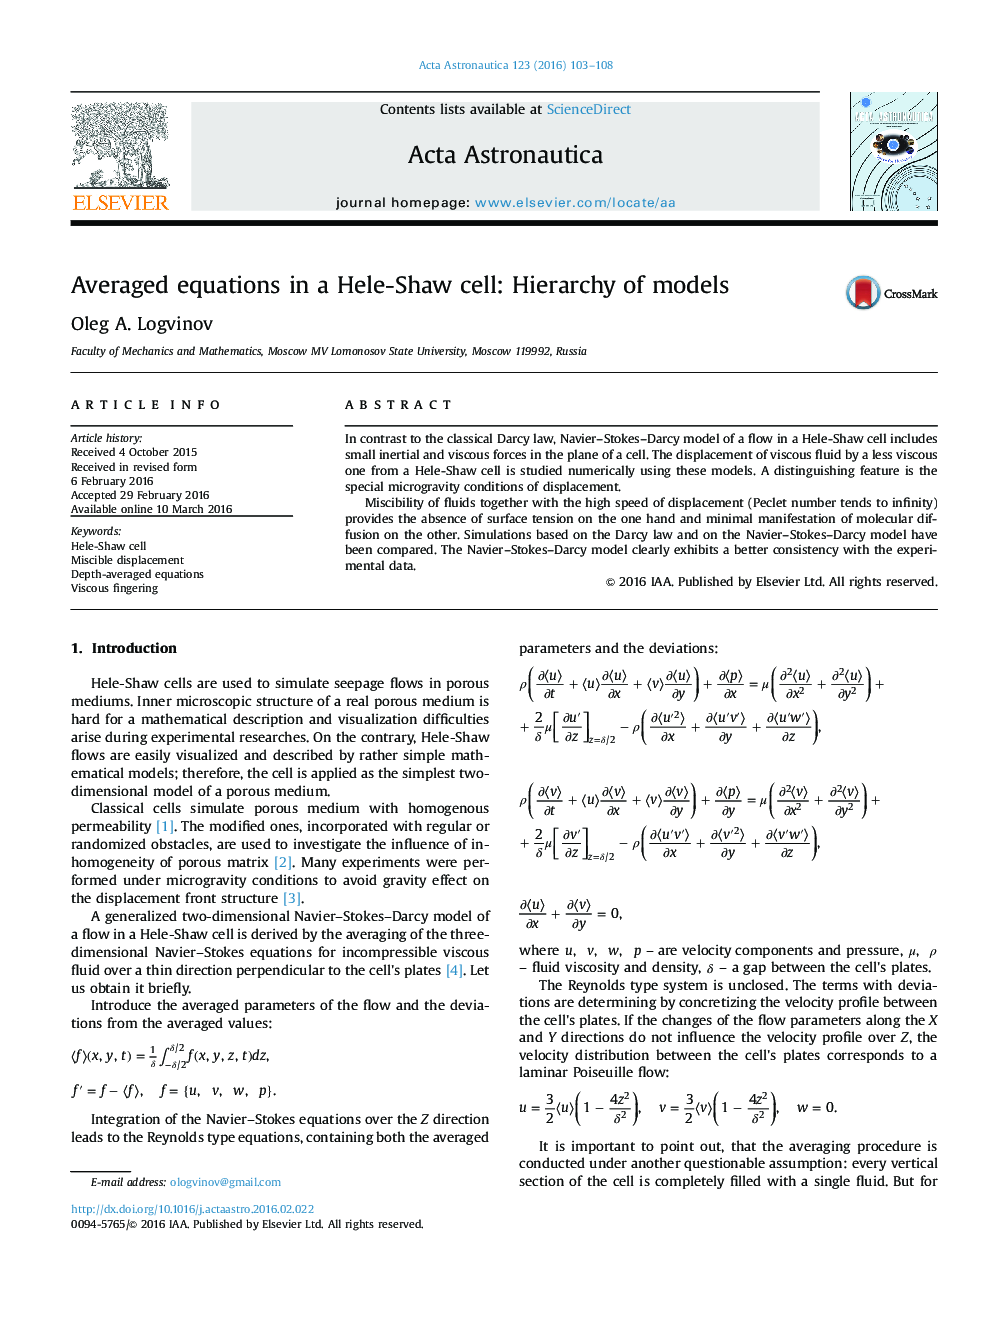 معادلات متوسط در یک سلول Hele-Shaw: سلسله مراتب مدل